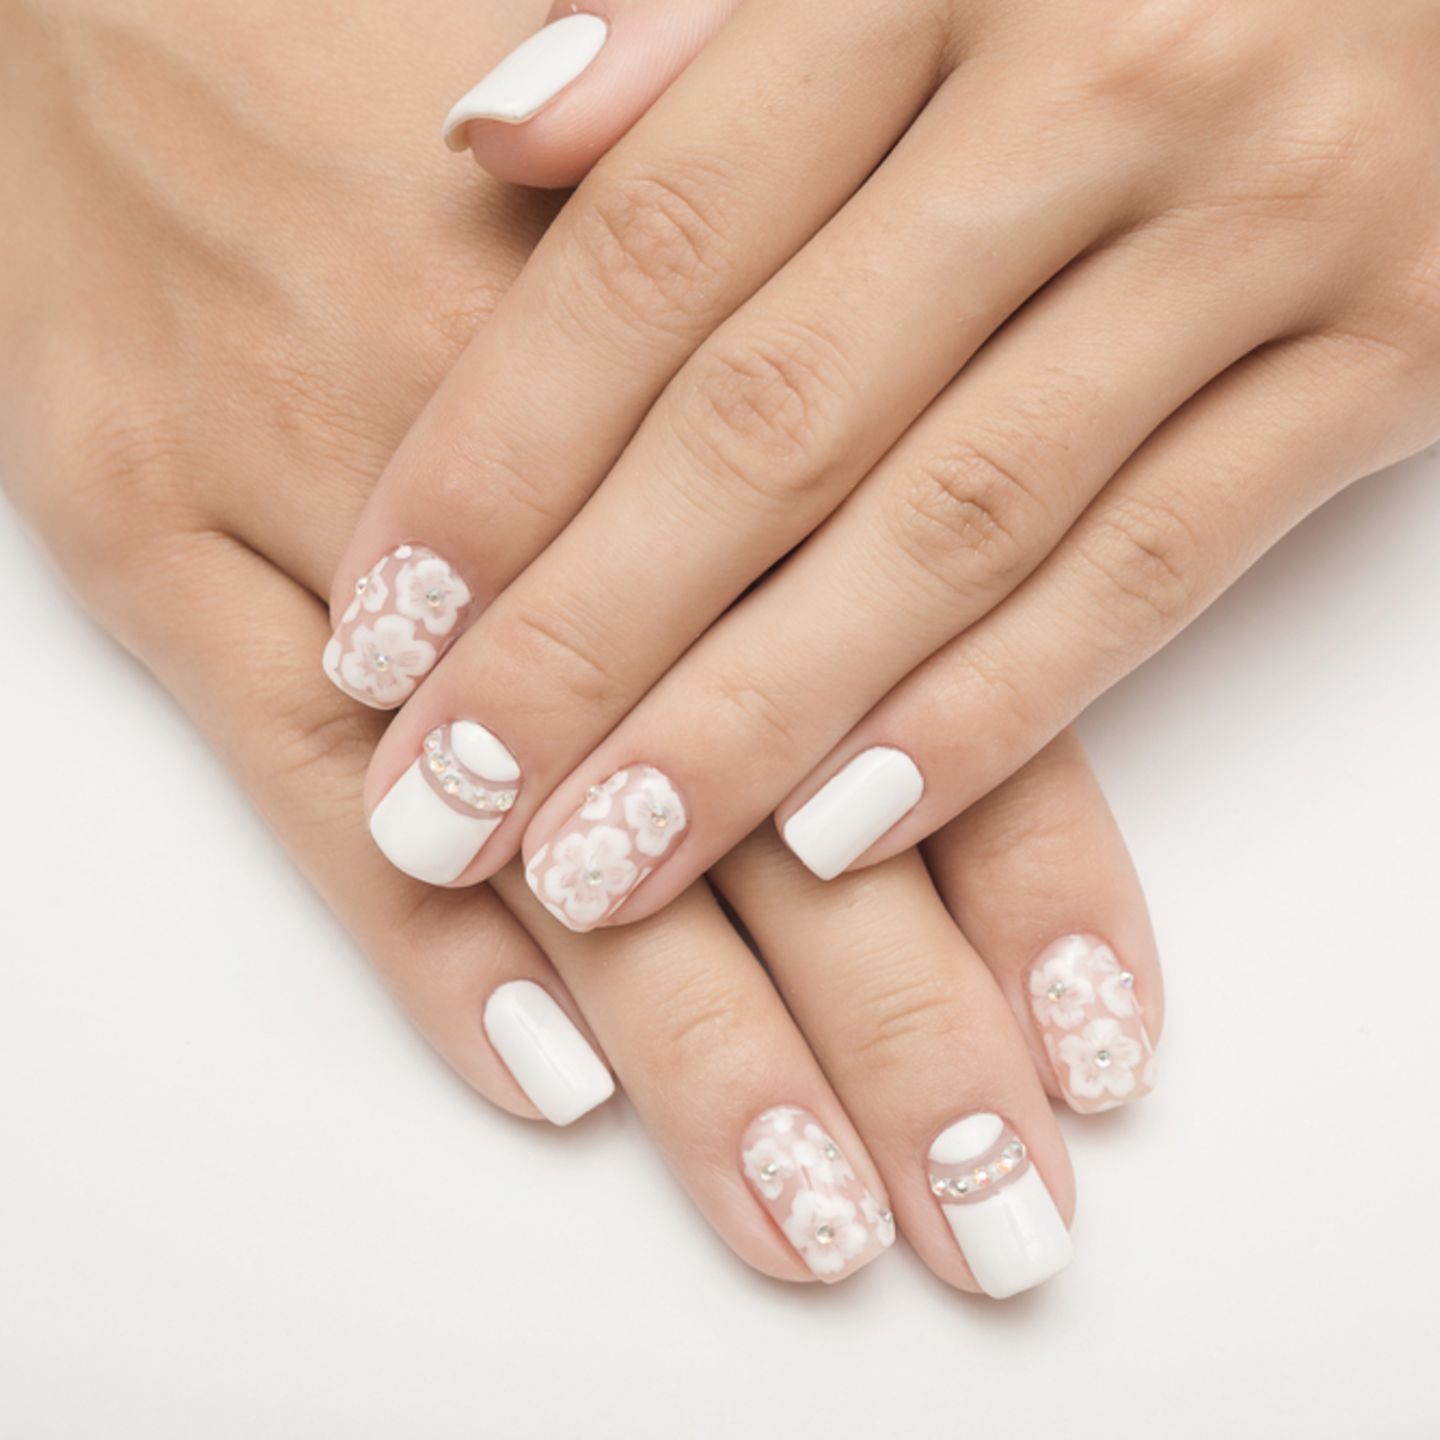 Hochzeitsnägel: Weiß lackierte Nägel mit Blumenmuster und Glitzersteinen